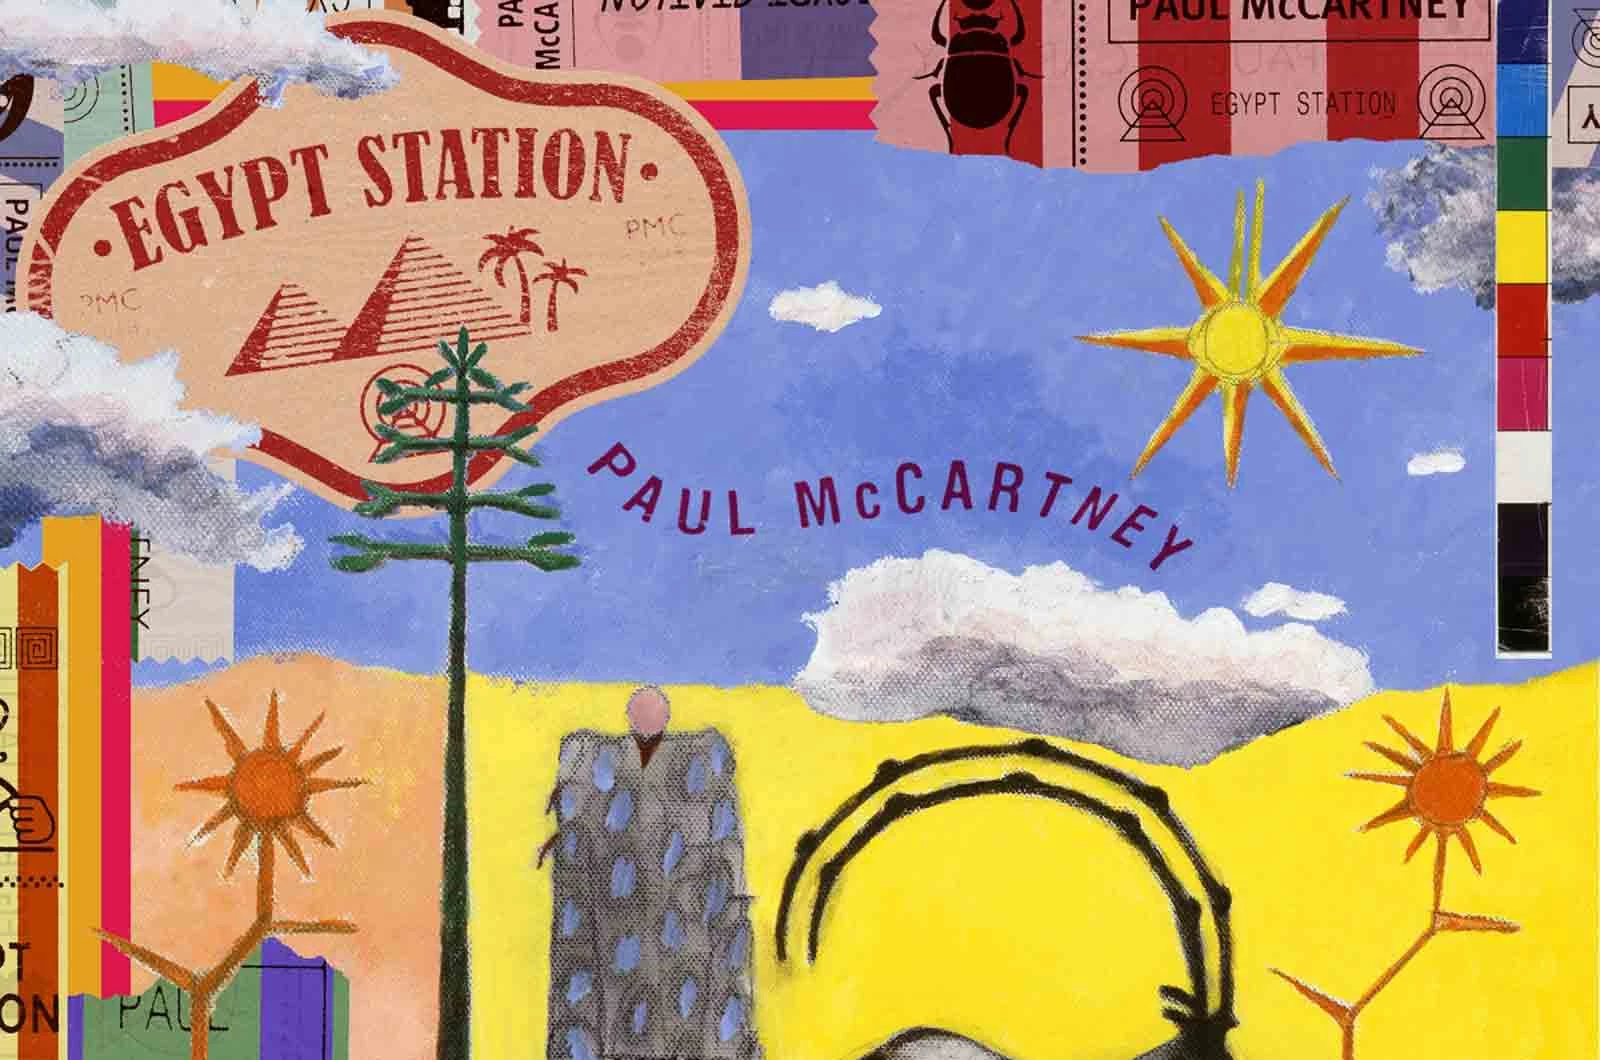 Paul McCartney, 'Egypt Station': Album Review